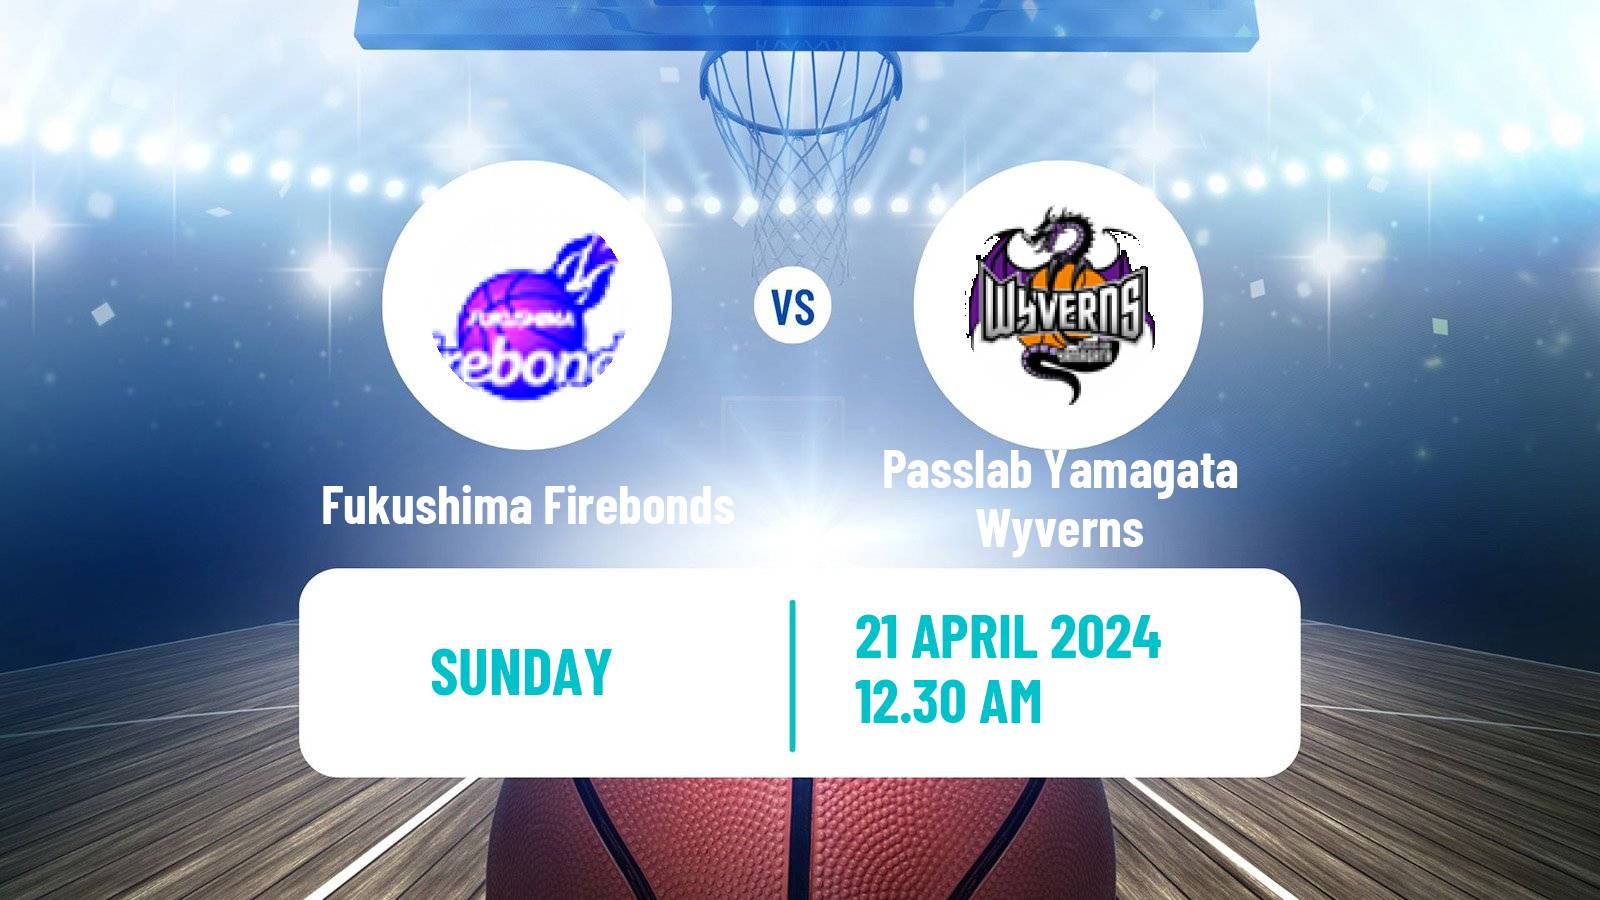 Basketball Japan B2 League Basketball Fukushima Firebonds - Passlab Yamagata Wyverns